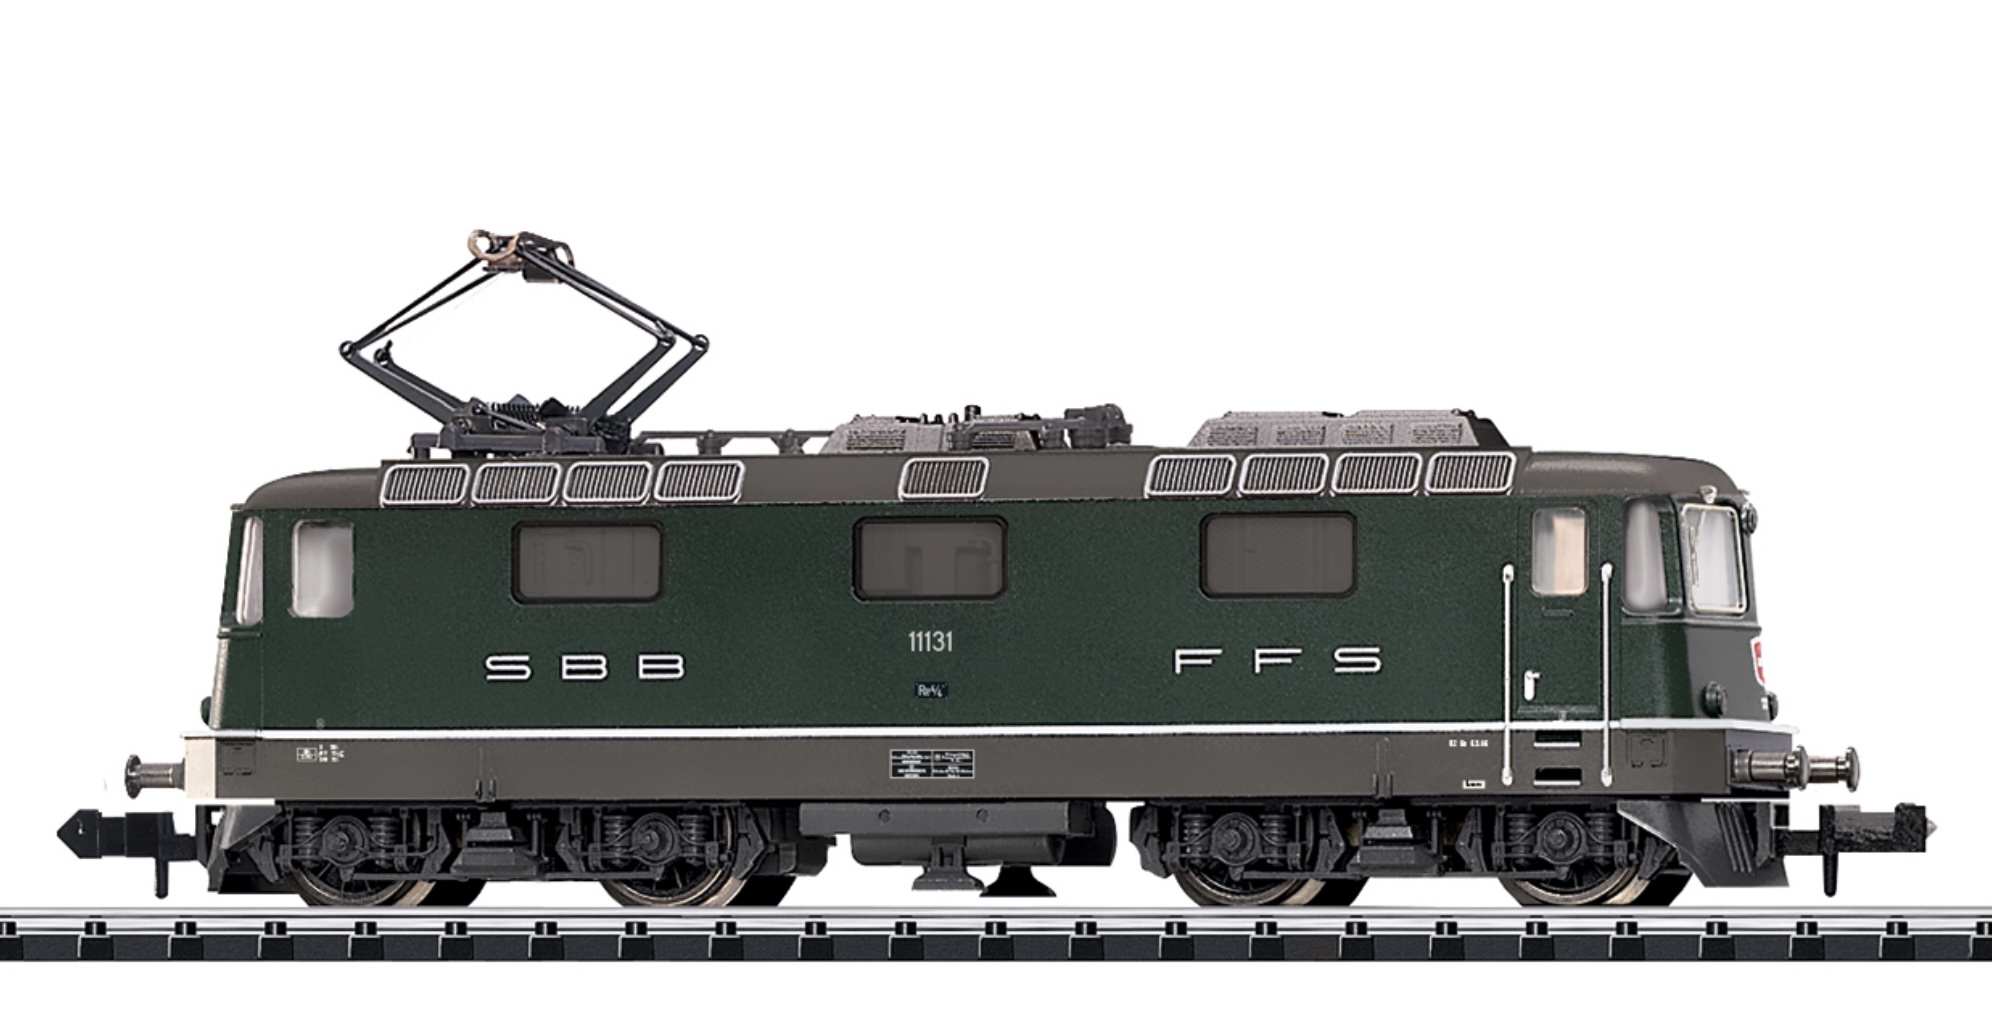 N Scale - Minitrix - 16881 - Electric Locomotive, Re 4/4, Epoch IV - SBB CFF FFS - 11131